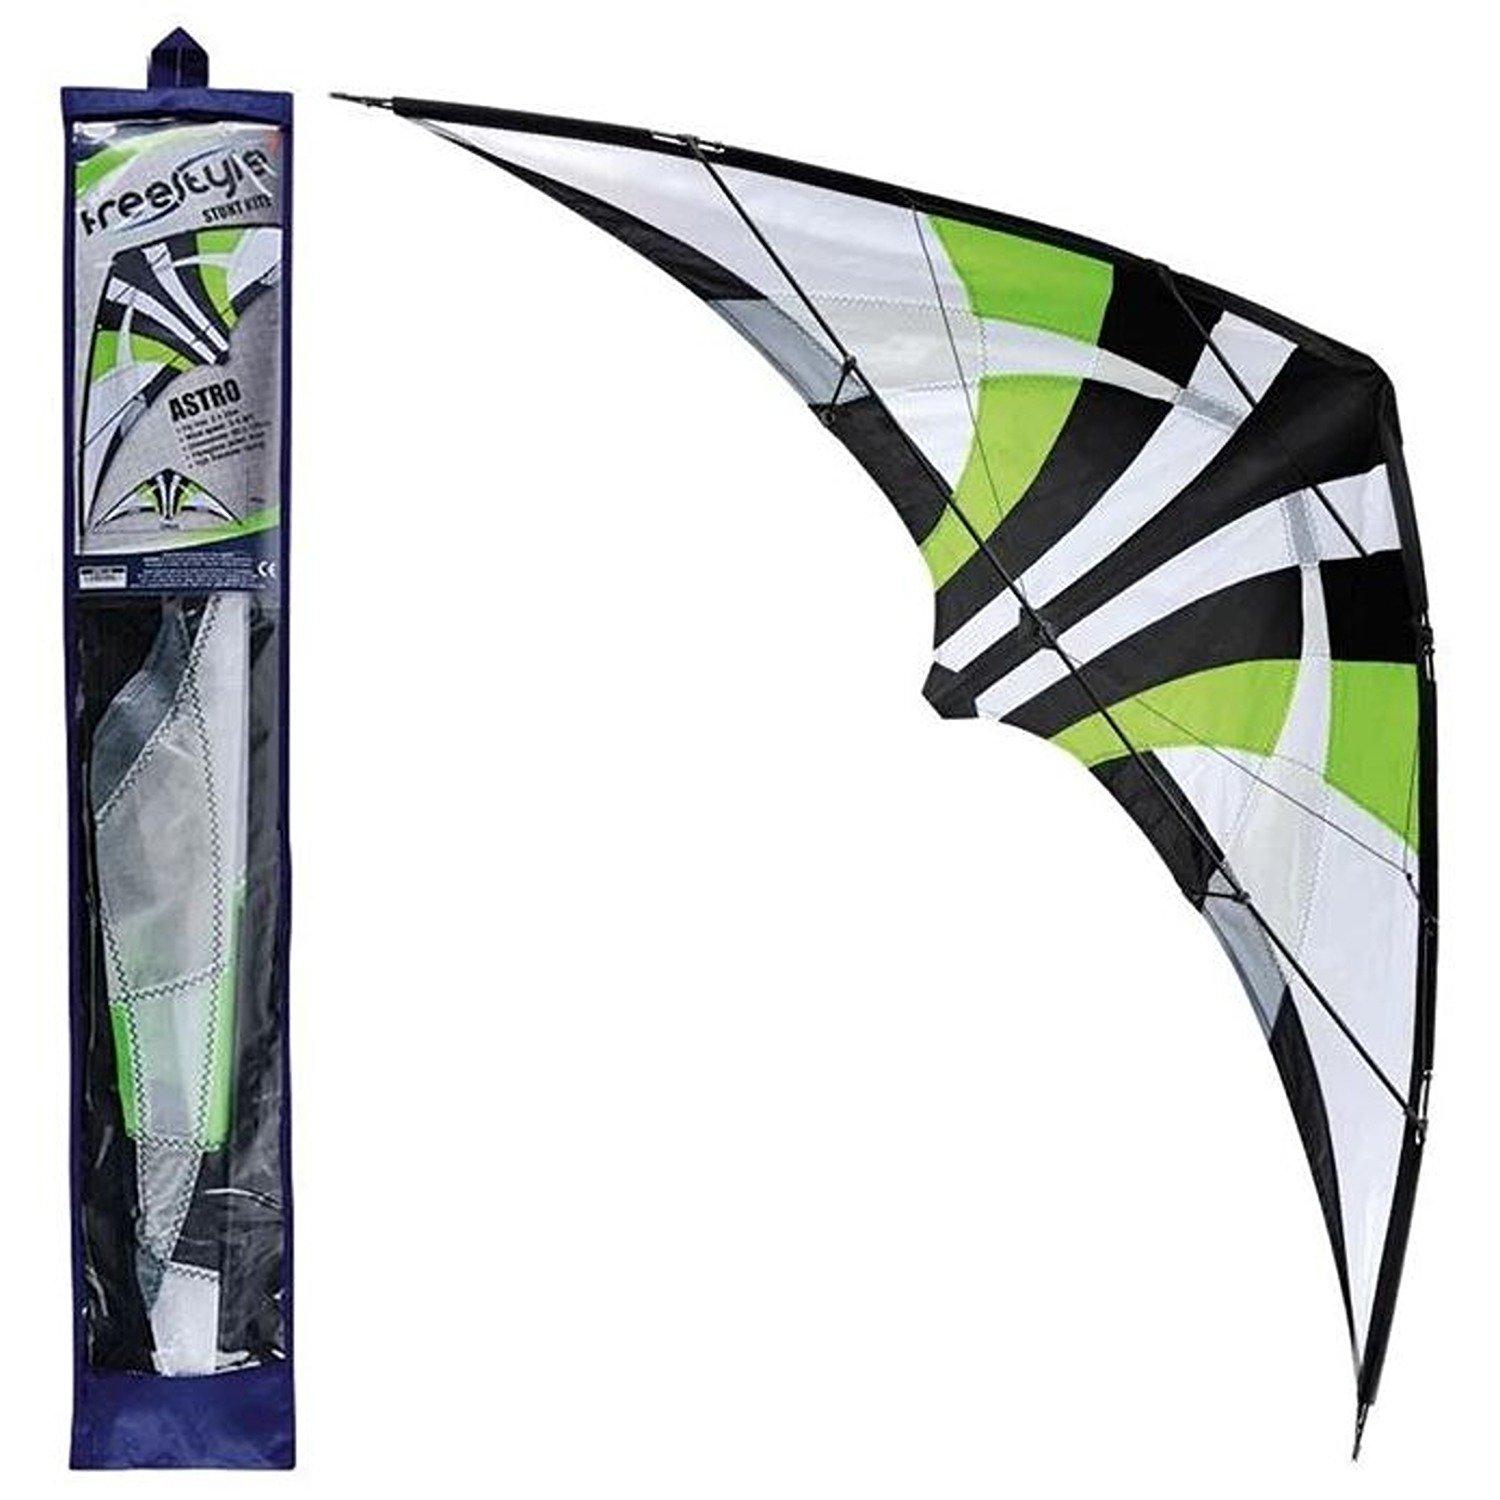 Astro Freestyle Stunt Kite (Green)